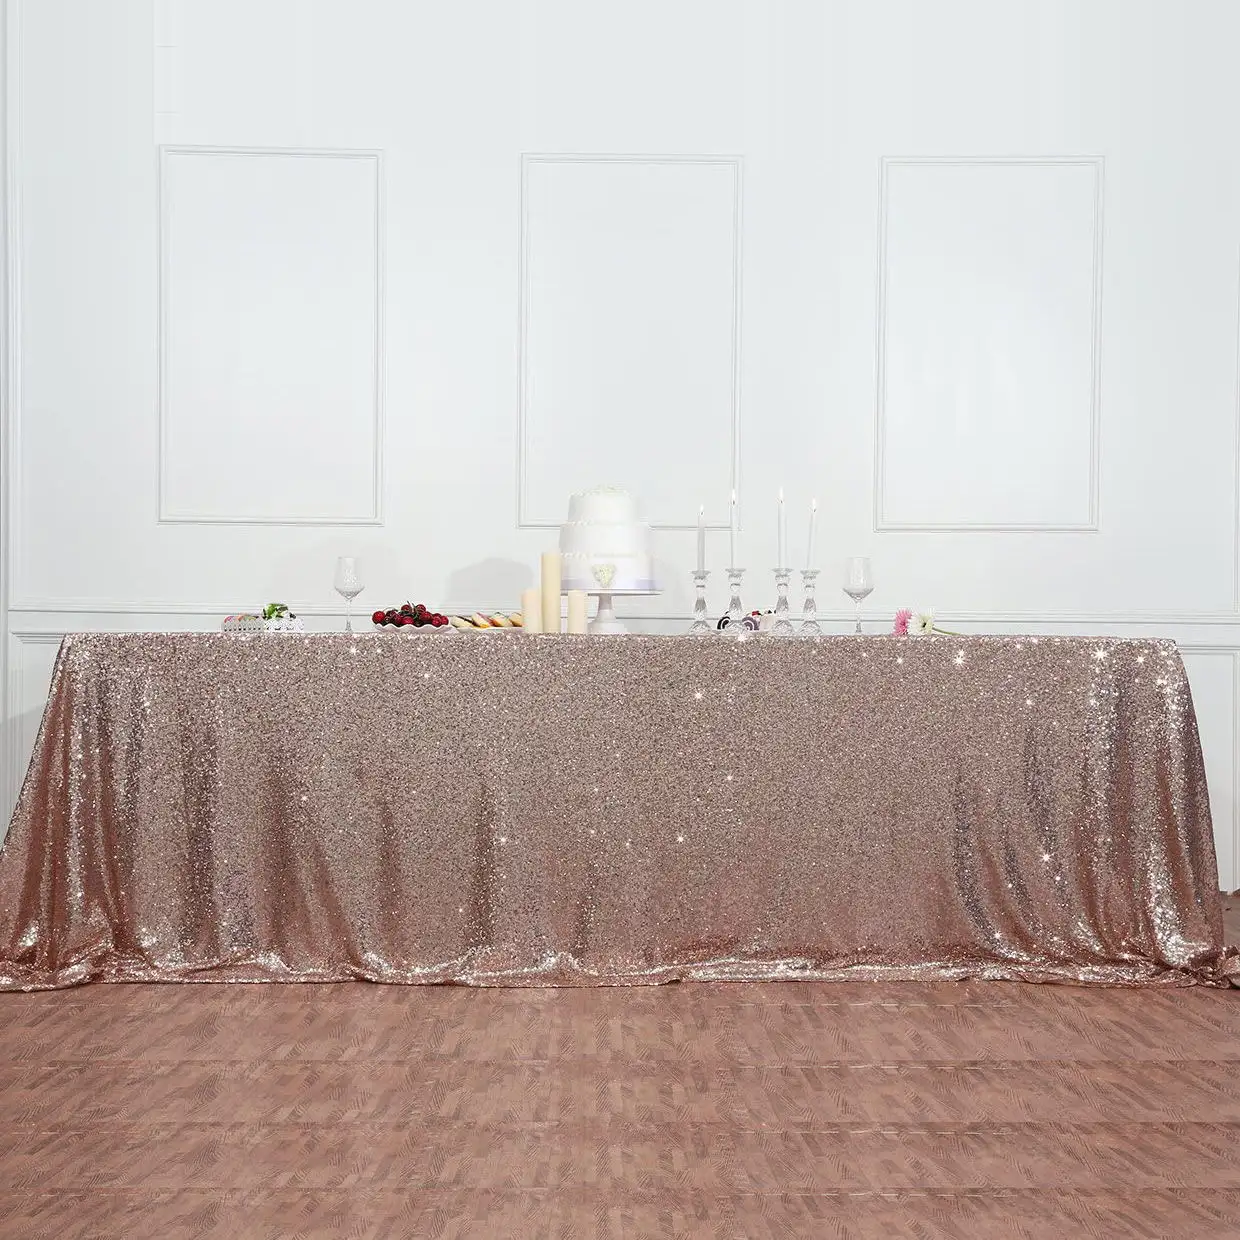 Vendita calda di natale festa nuziale casa famiglia banchetto tovaglia decorazione 50x80 pollici rettangolare oro rosa paillettes tovaglia